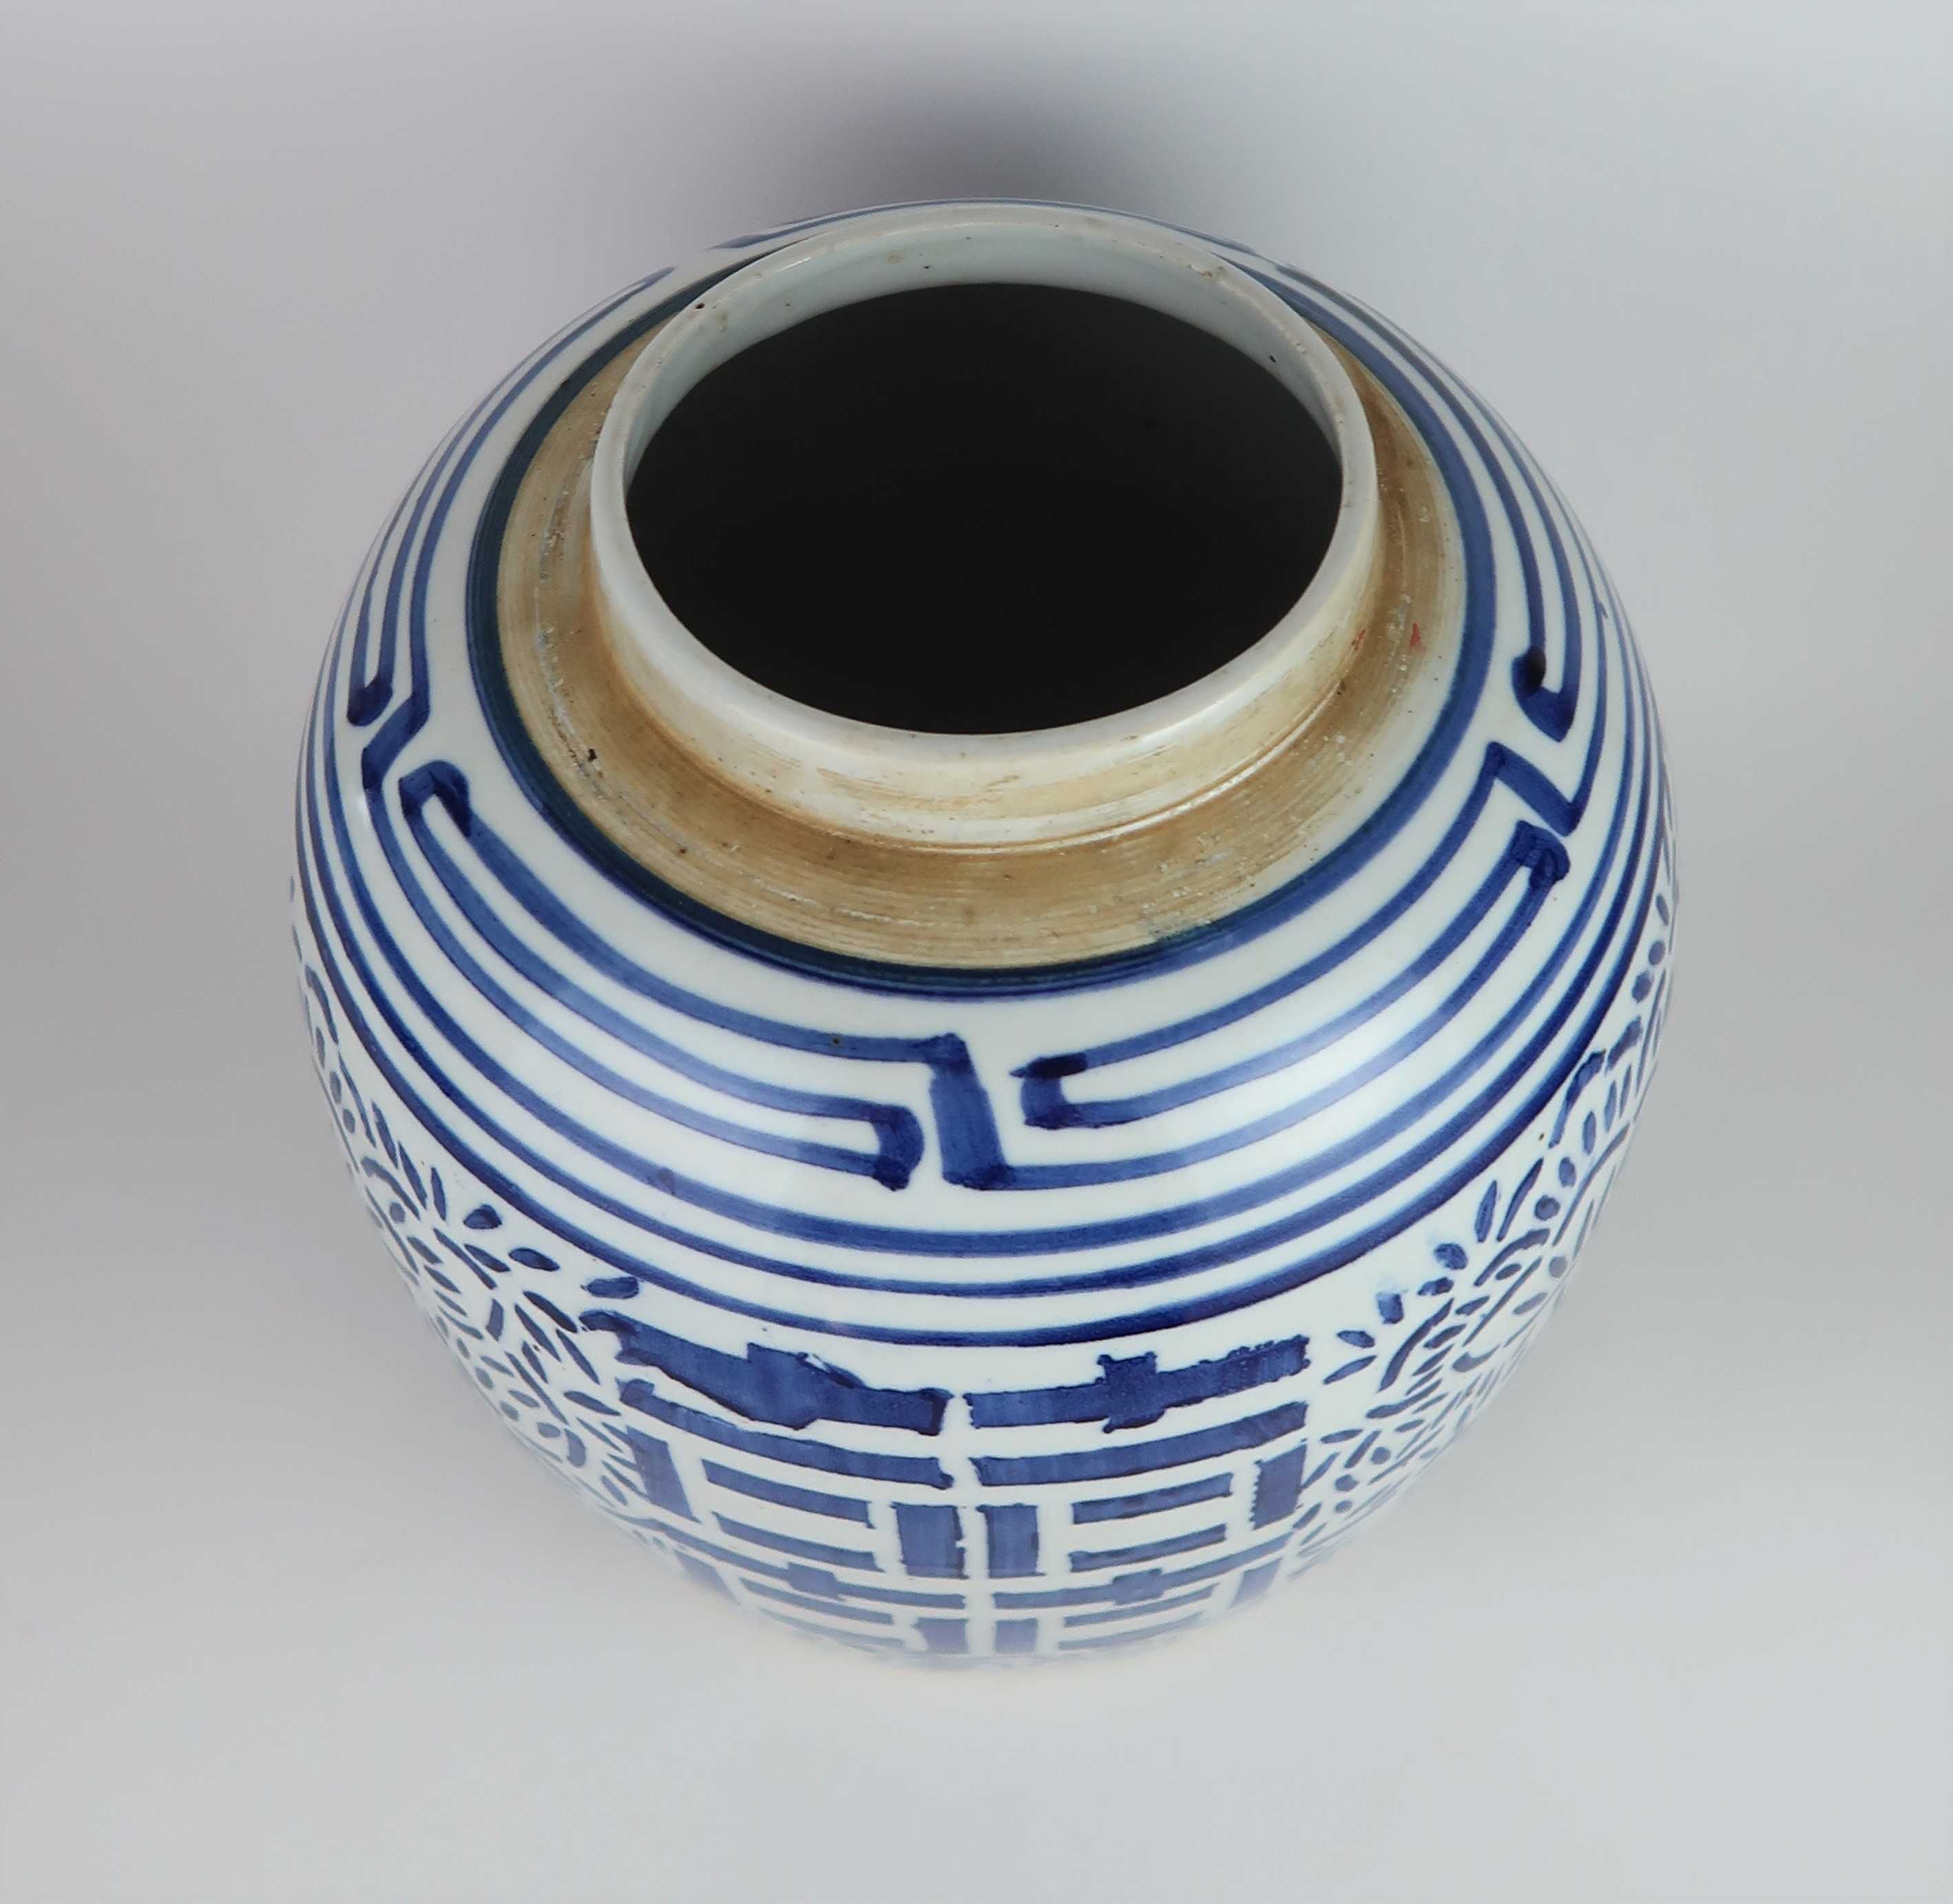 Pote de Gengibre " double happiness " Porcelana Azul e Branca da China